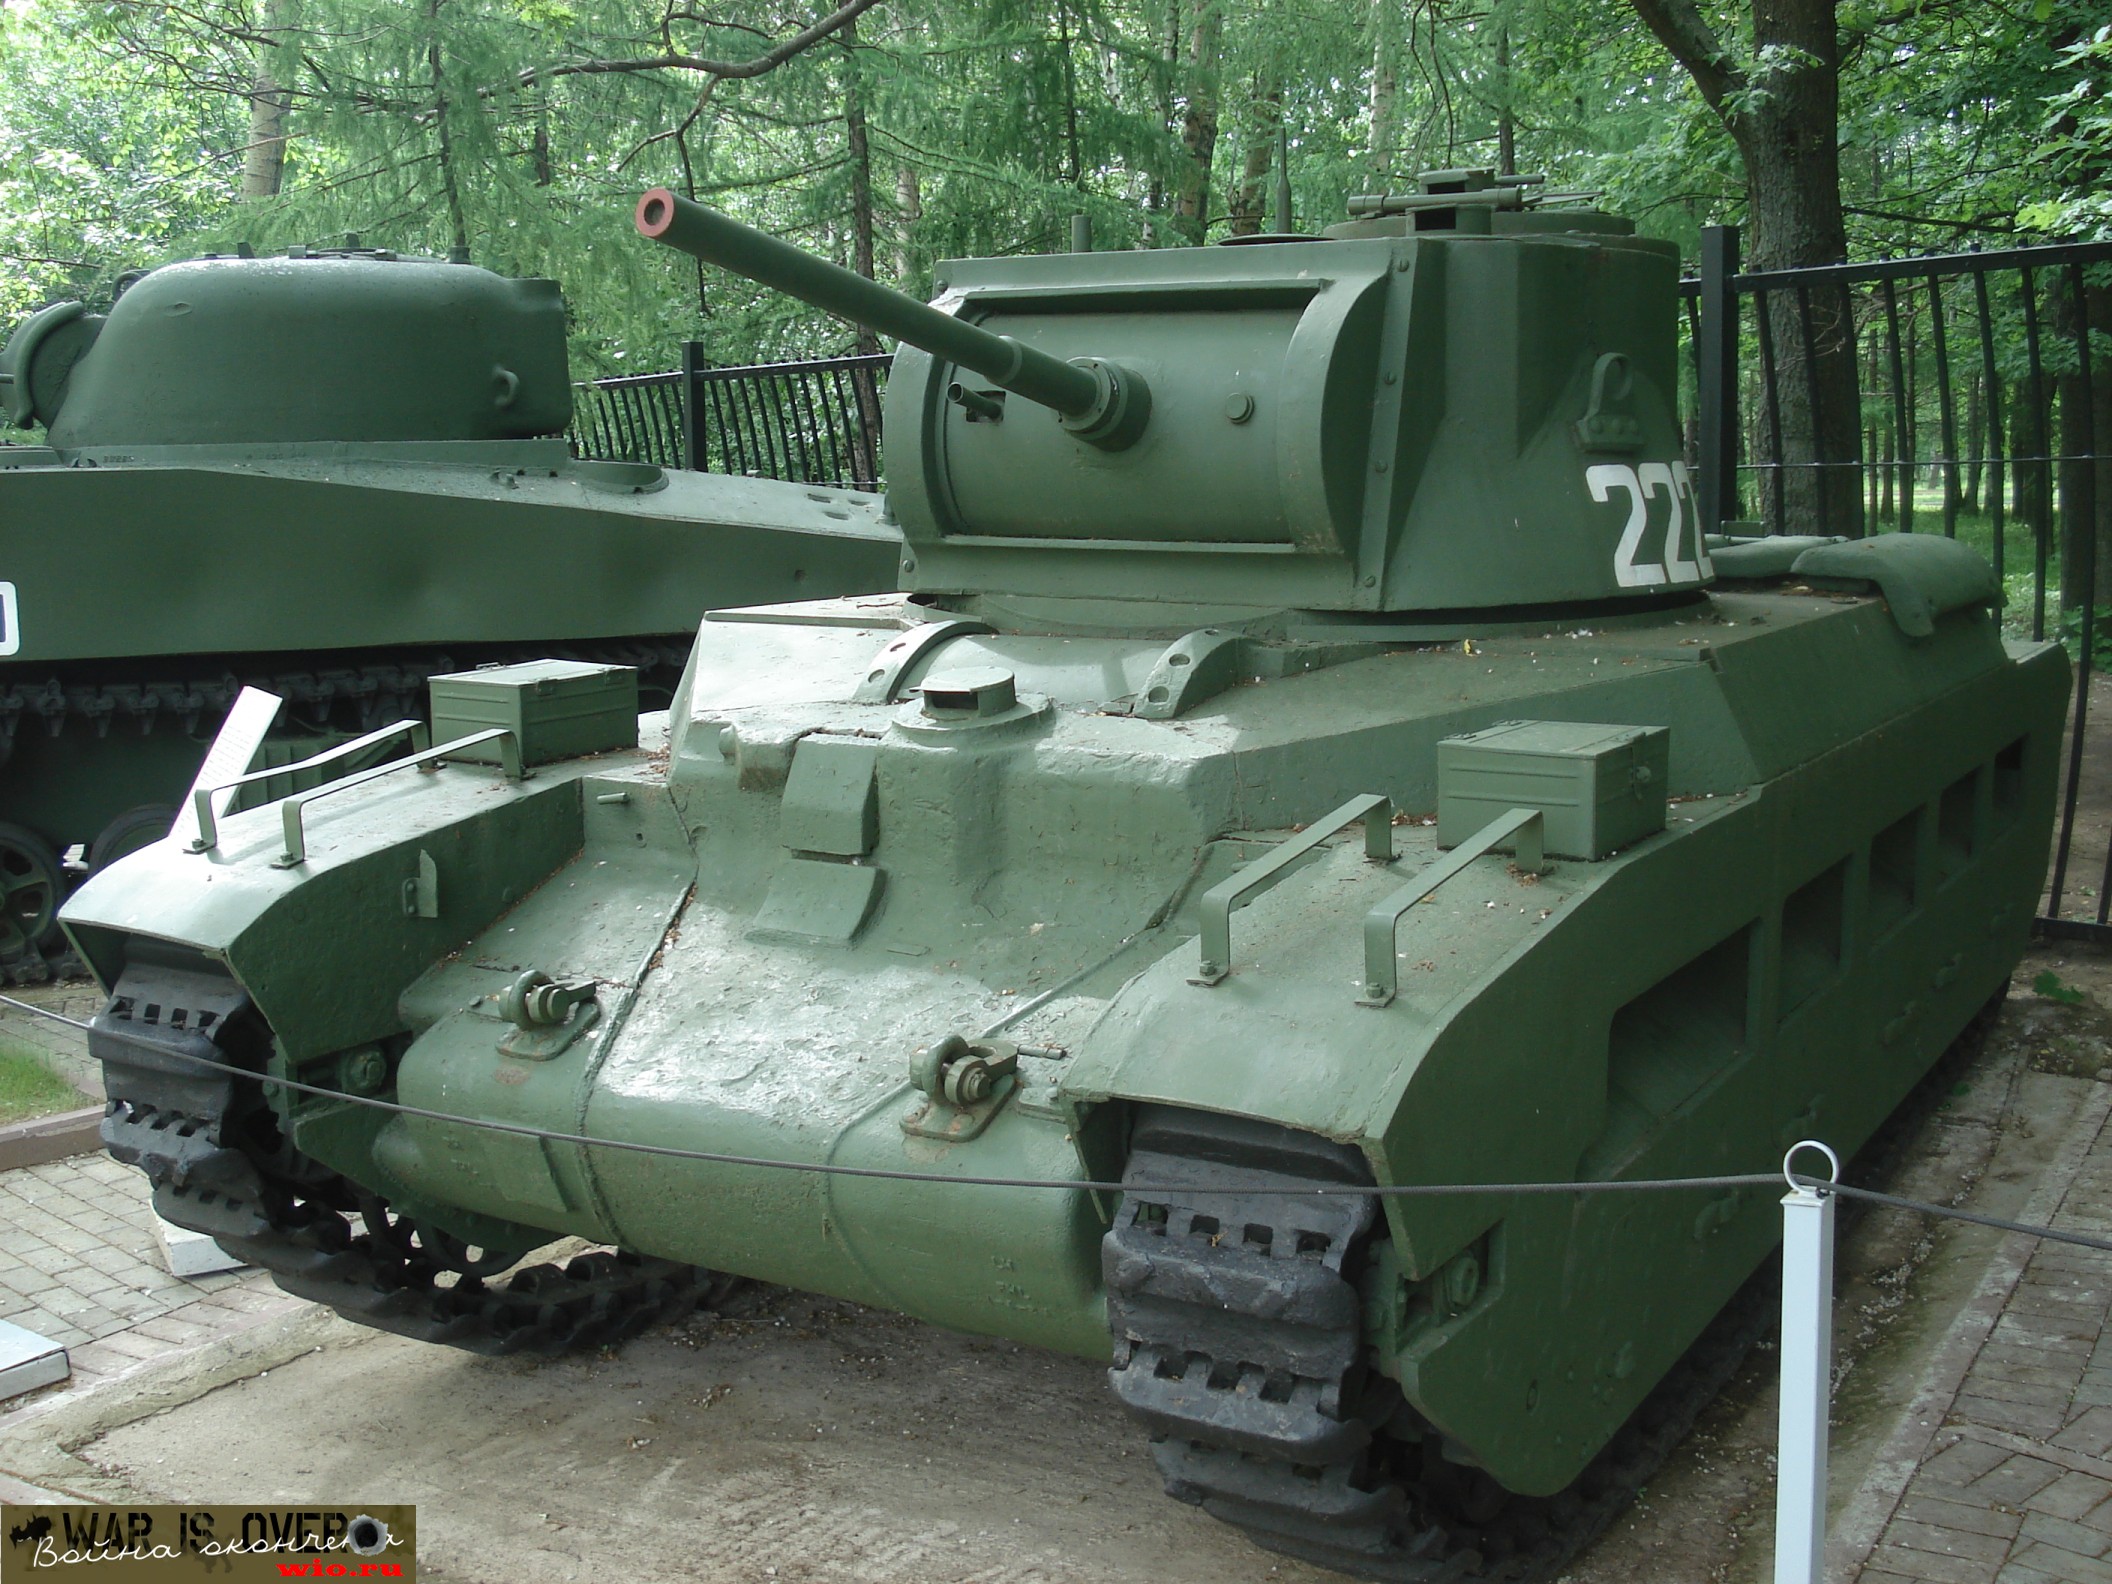 Лендлизовский пехотный танк Матильда на Поклонке: цветное фото